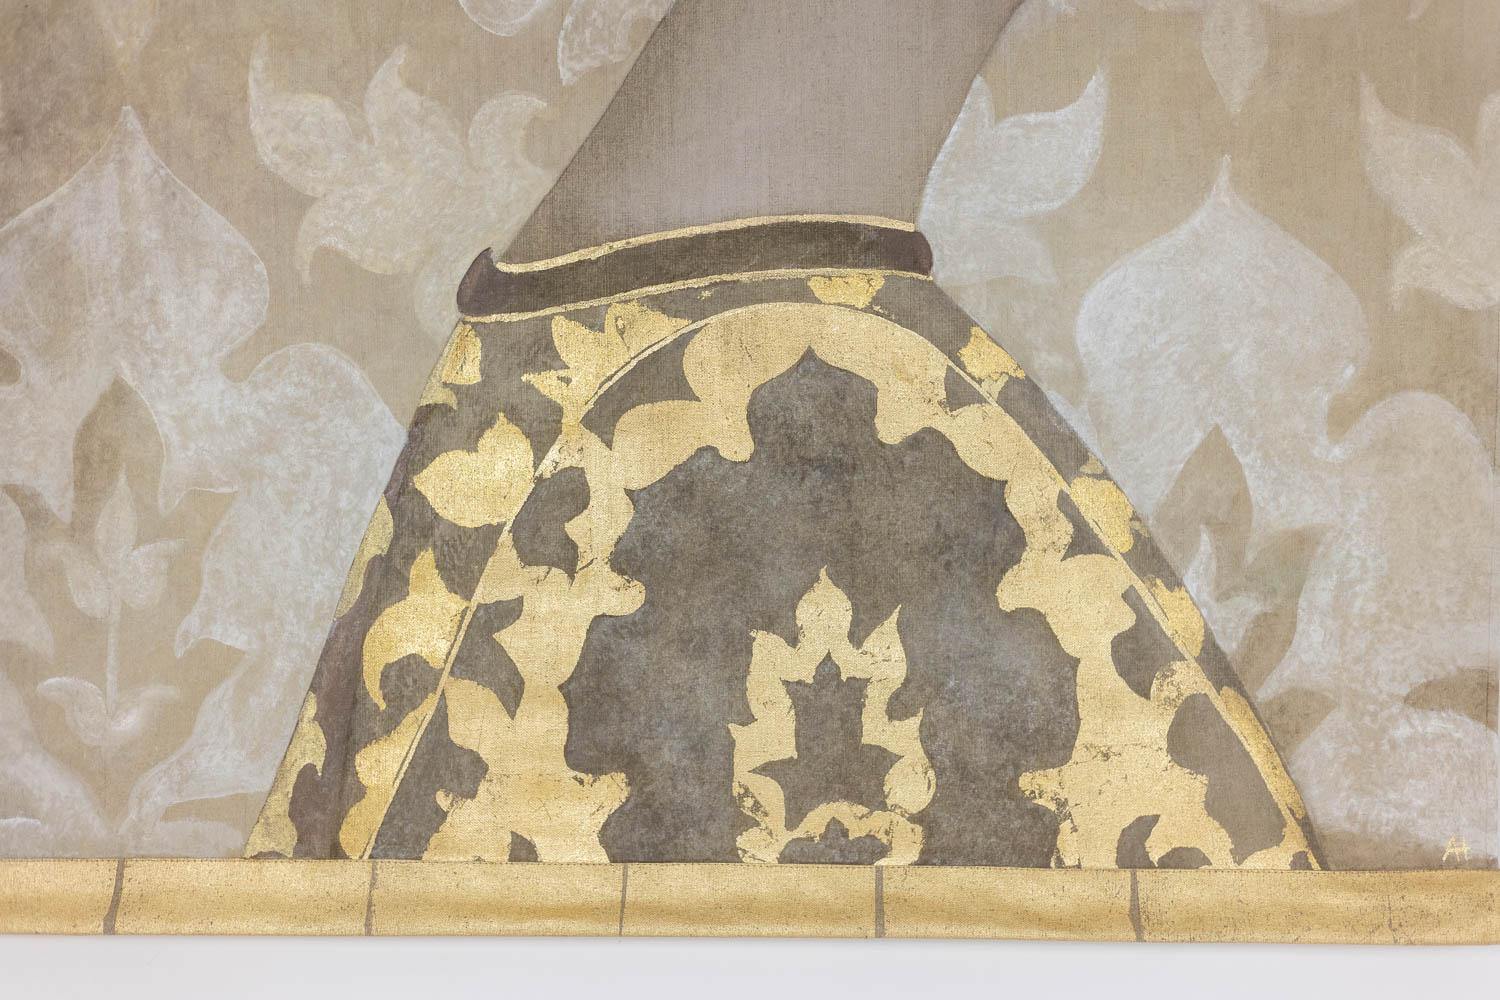 Toile peinte, ou panneau décoratif, de style Renaissance, représentant une femme noble de profil et regardant vers la droite, avec sa coiffe et son manteau dans les tons or et chocolat sur un fond à motifs dans les tons beiges.

Travail d'artistes